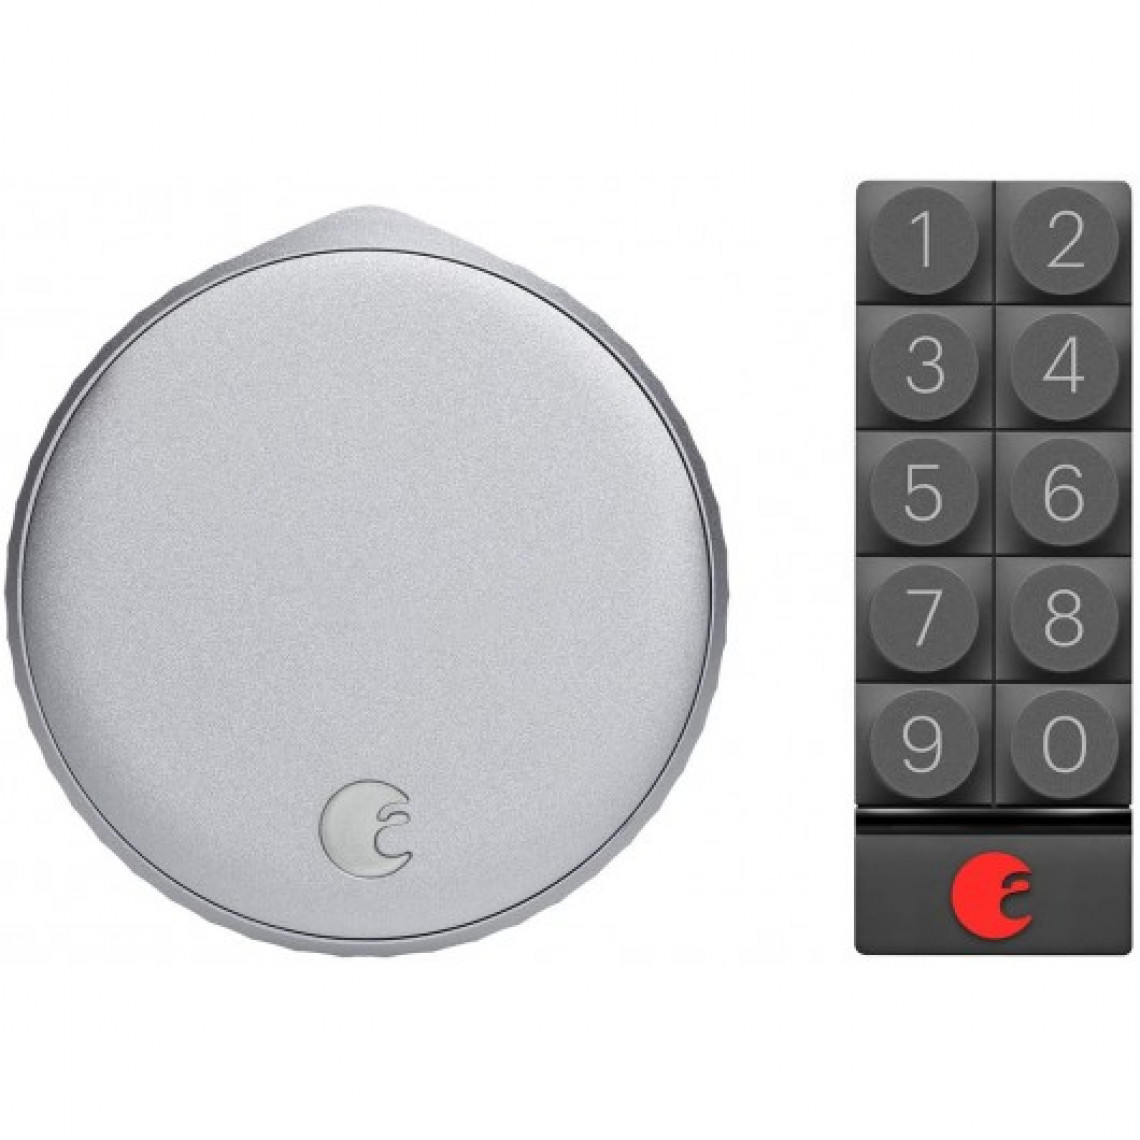 001 International - August Wi-Fi Smart Lock+ Keypad, une porte sécurisée - Accessoires sécurité connectée